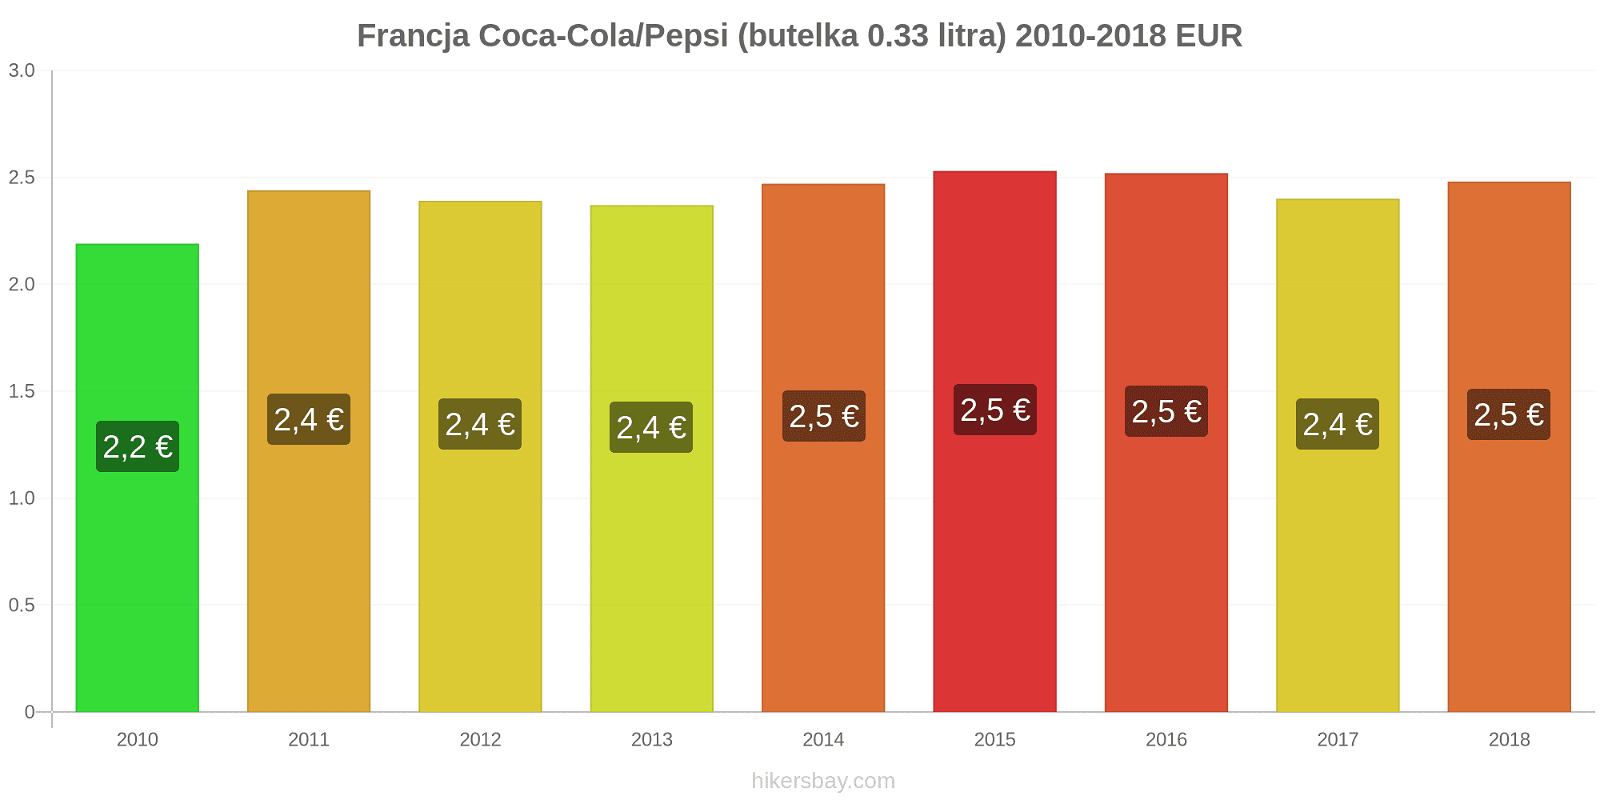 Francja zmiany cen Coca-Cola/Pepsi (butelka 0.33 litra) hikersbay.com